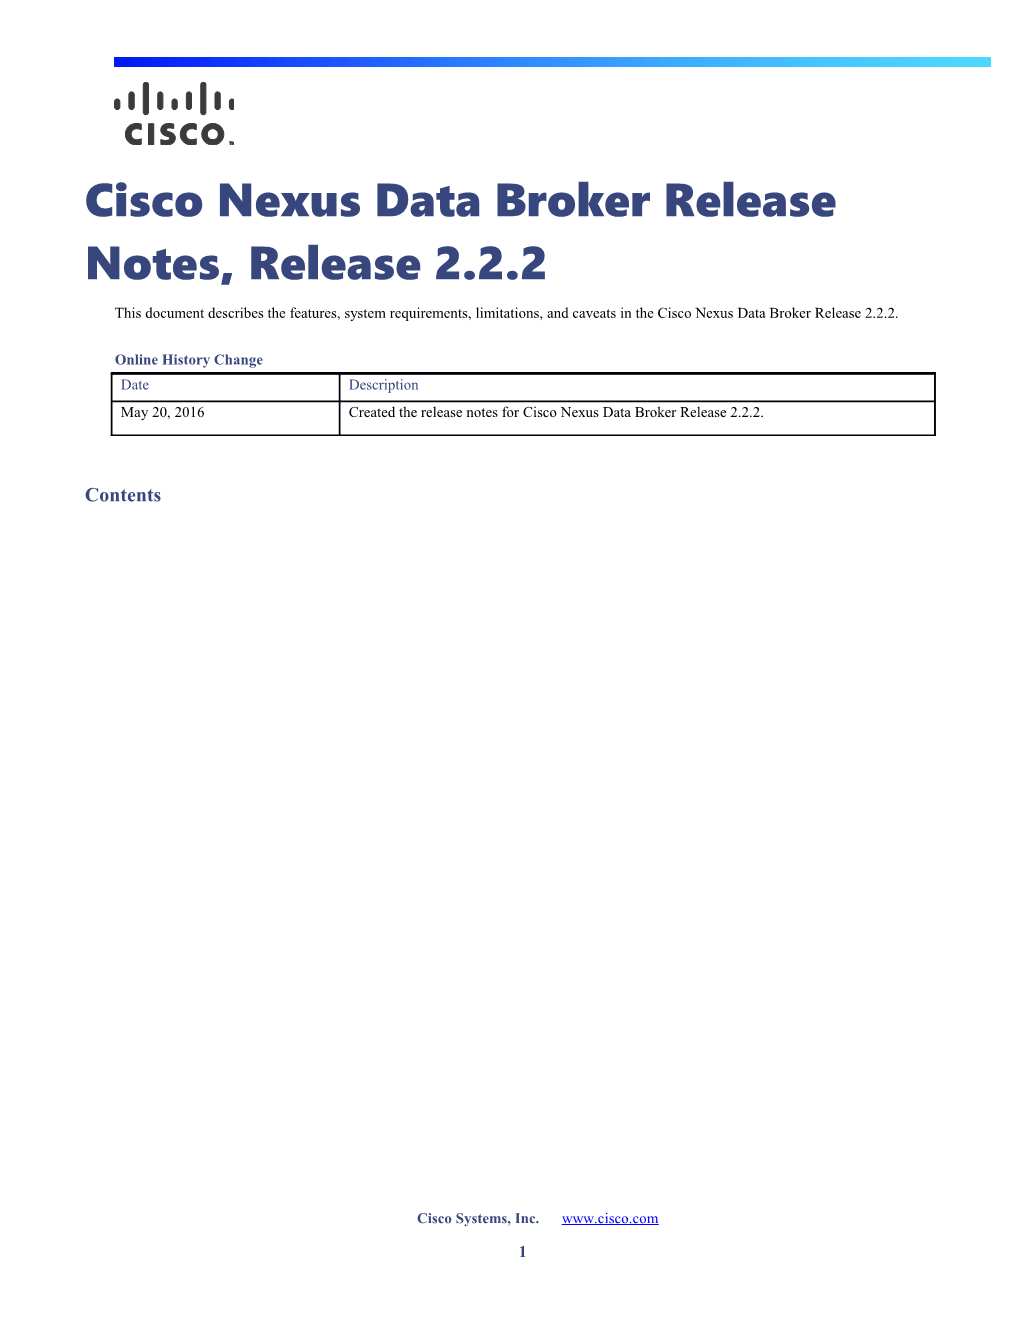 Cisco Nexus Data Broker Release Notes, Release 2.2.2